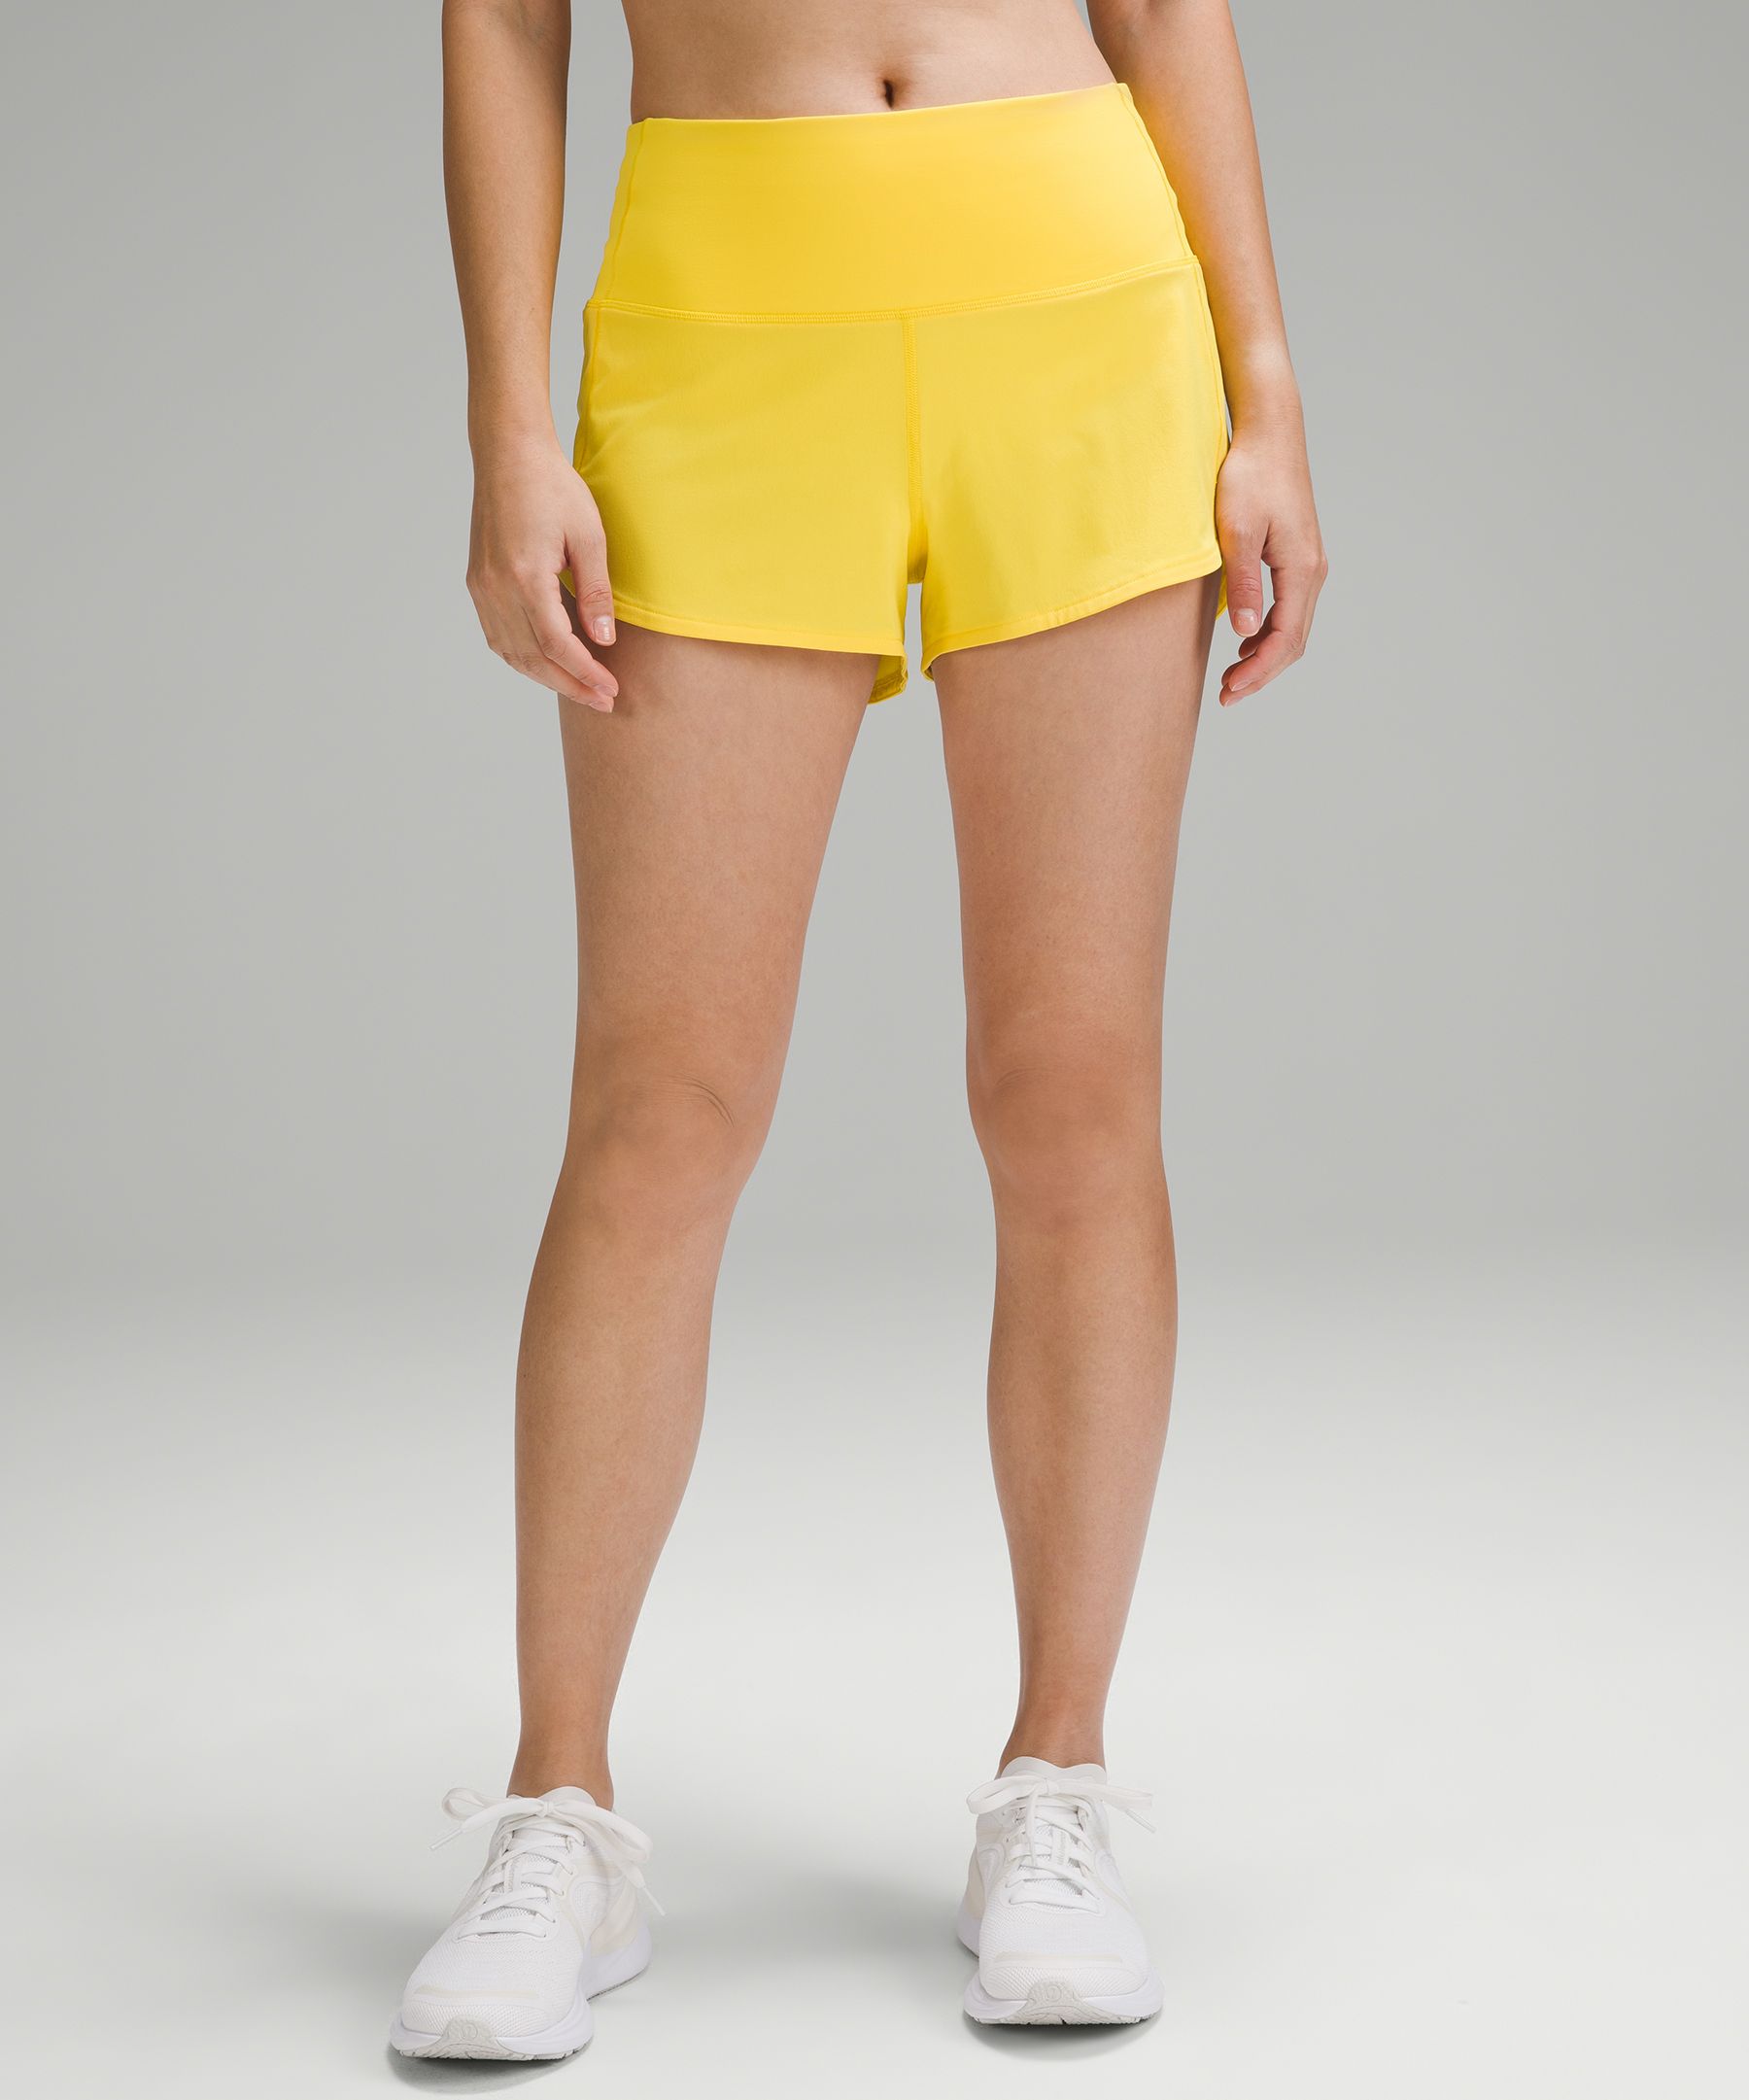 lululemon athletica, Shorts, Highlight Yellow Lululemon Speed Up Shorts  Size